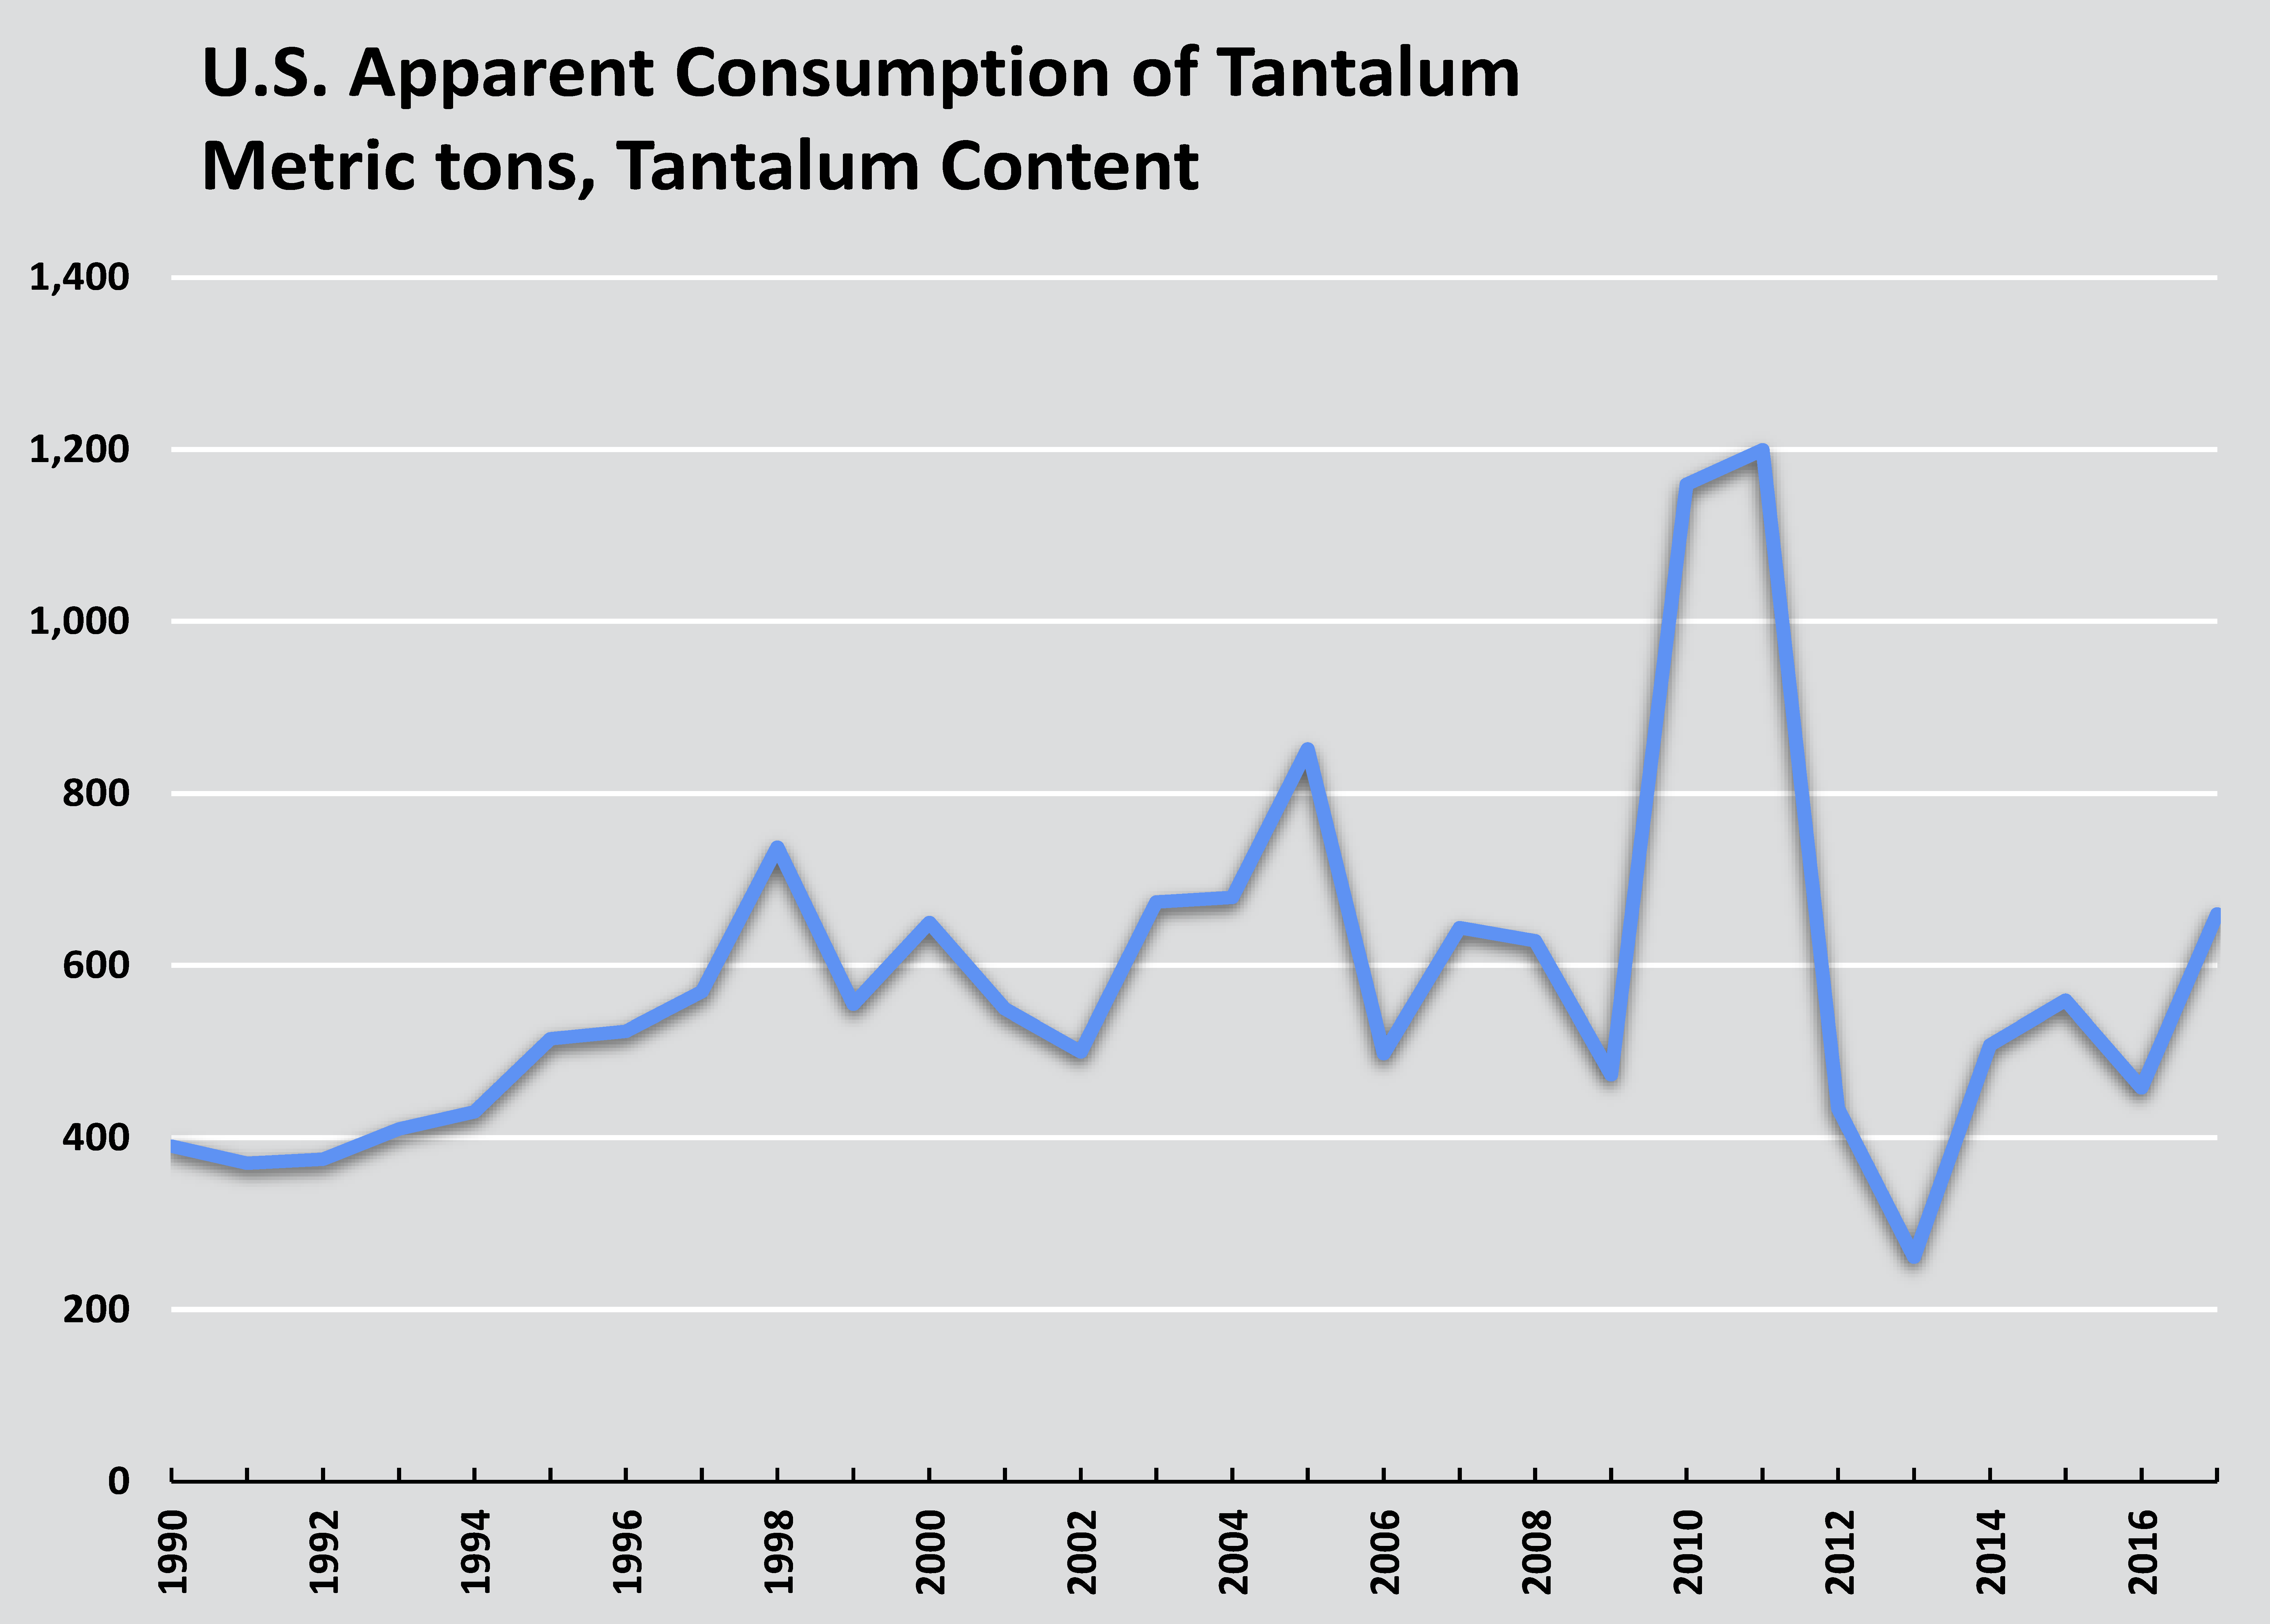 US Apparent Consumption of Tantalum Through Time